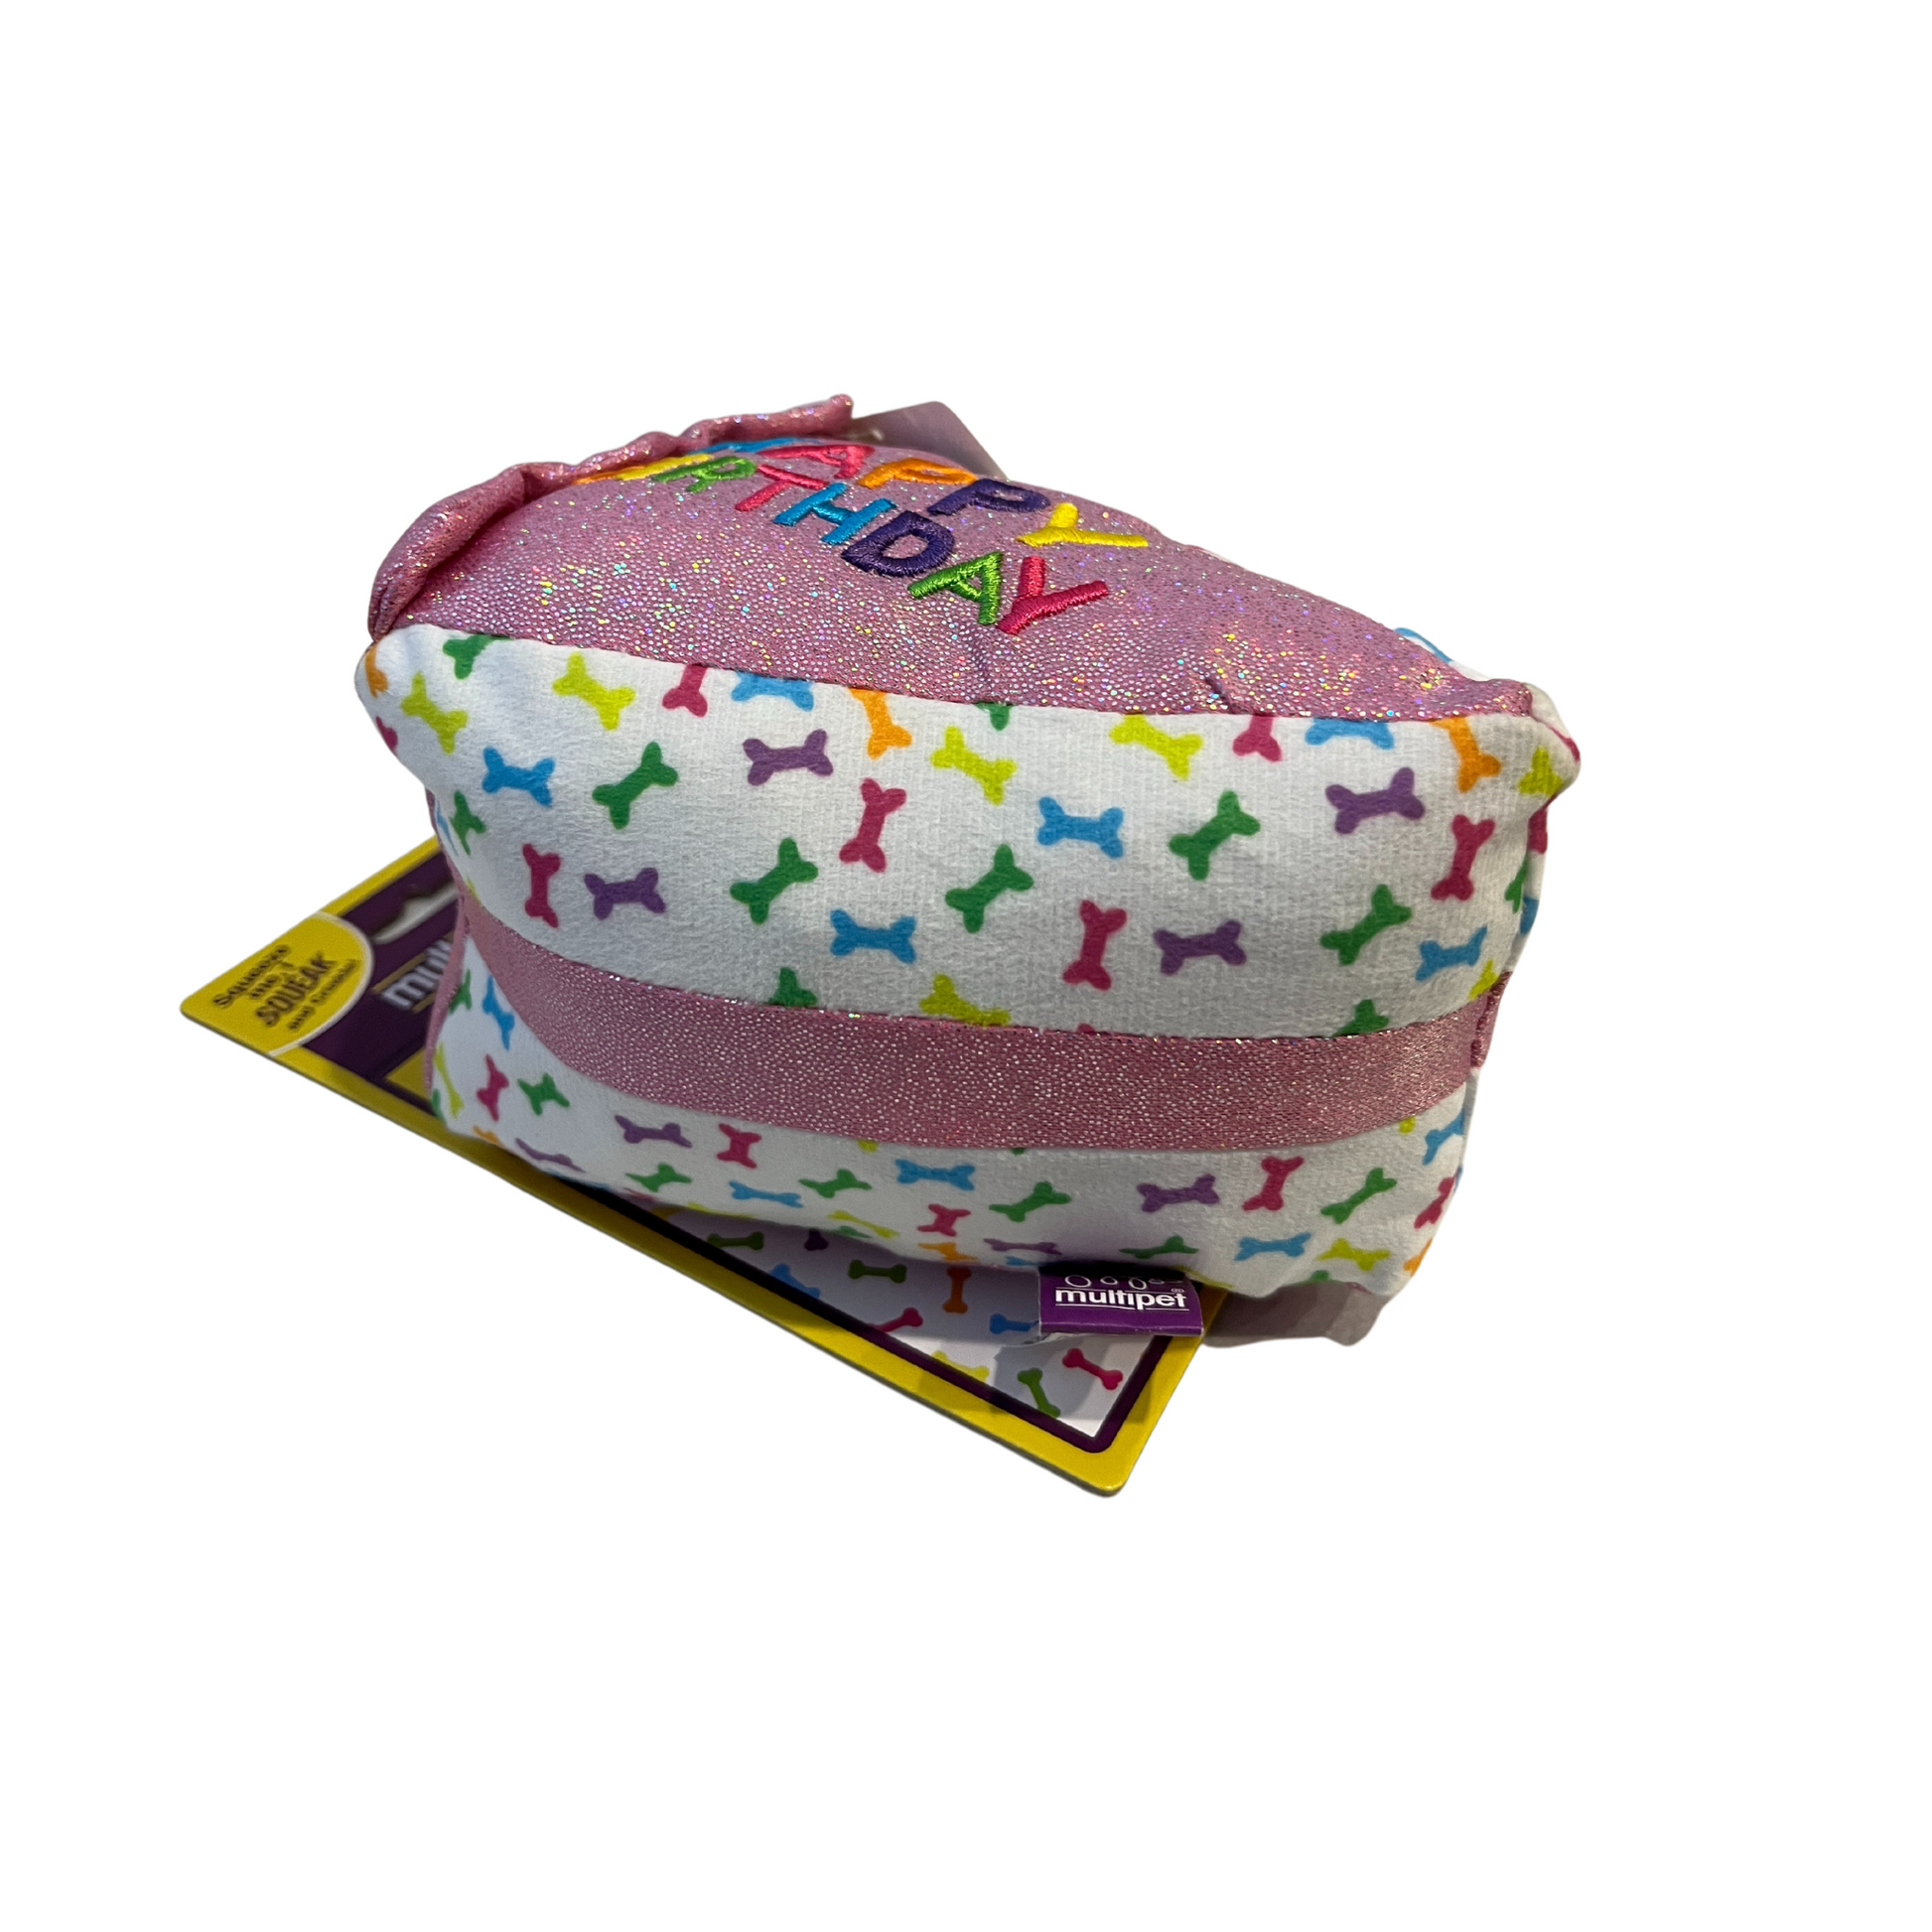 Multipet Pink Birthday Cake Slice Dog Toy